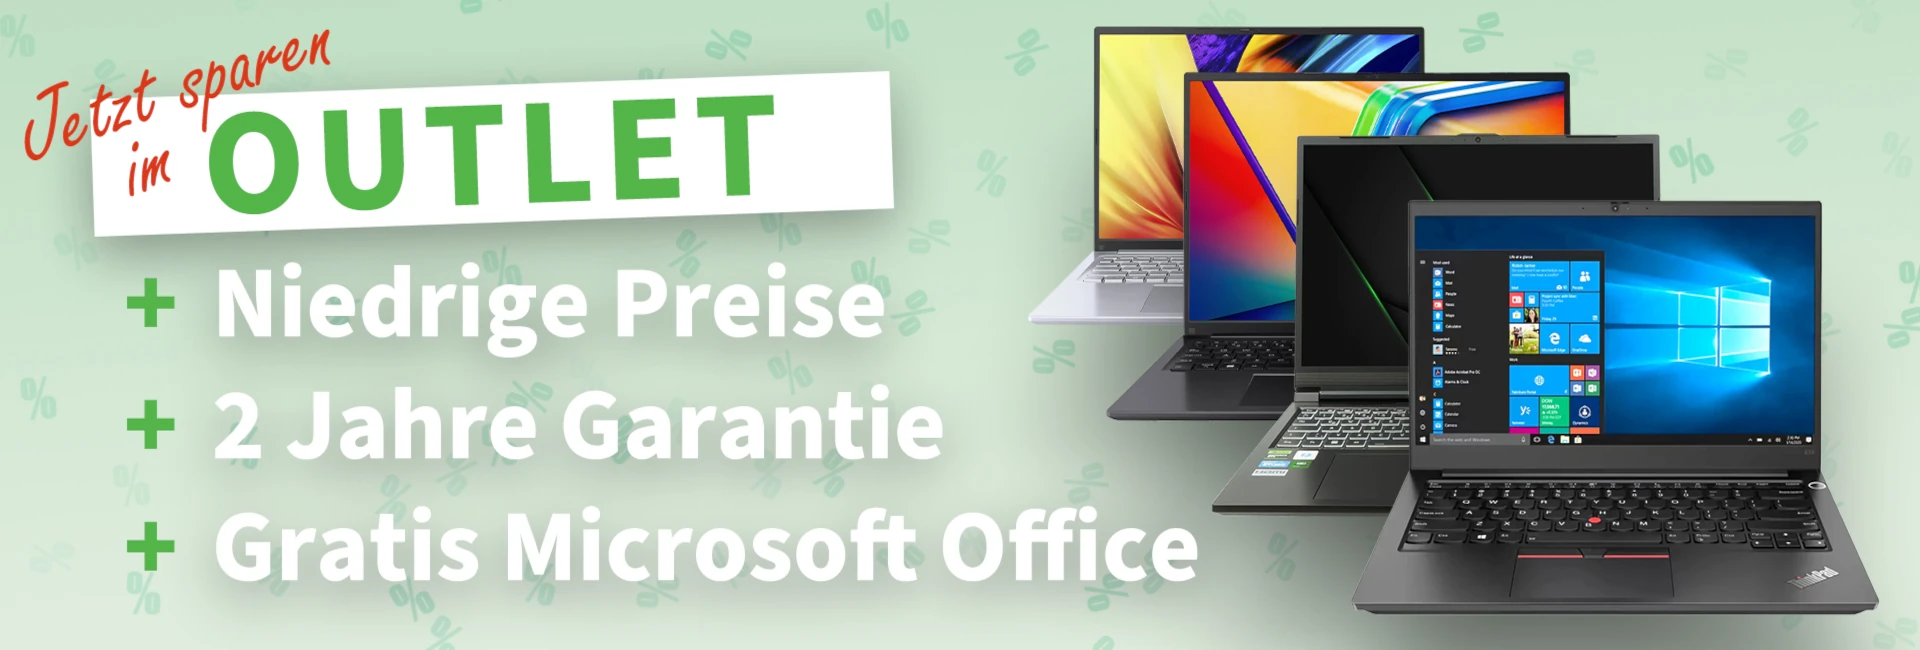 Sparen im Outlet +Niedrige Preise + 2 Jahre Garantie + Gratis Microsoft Office